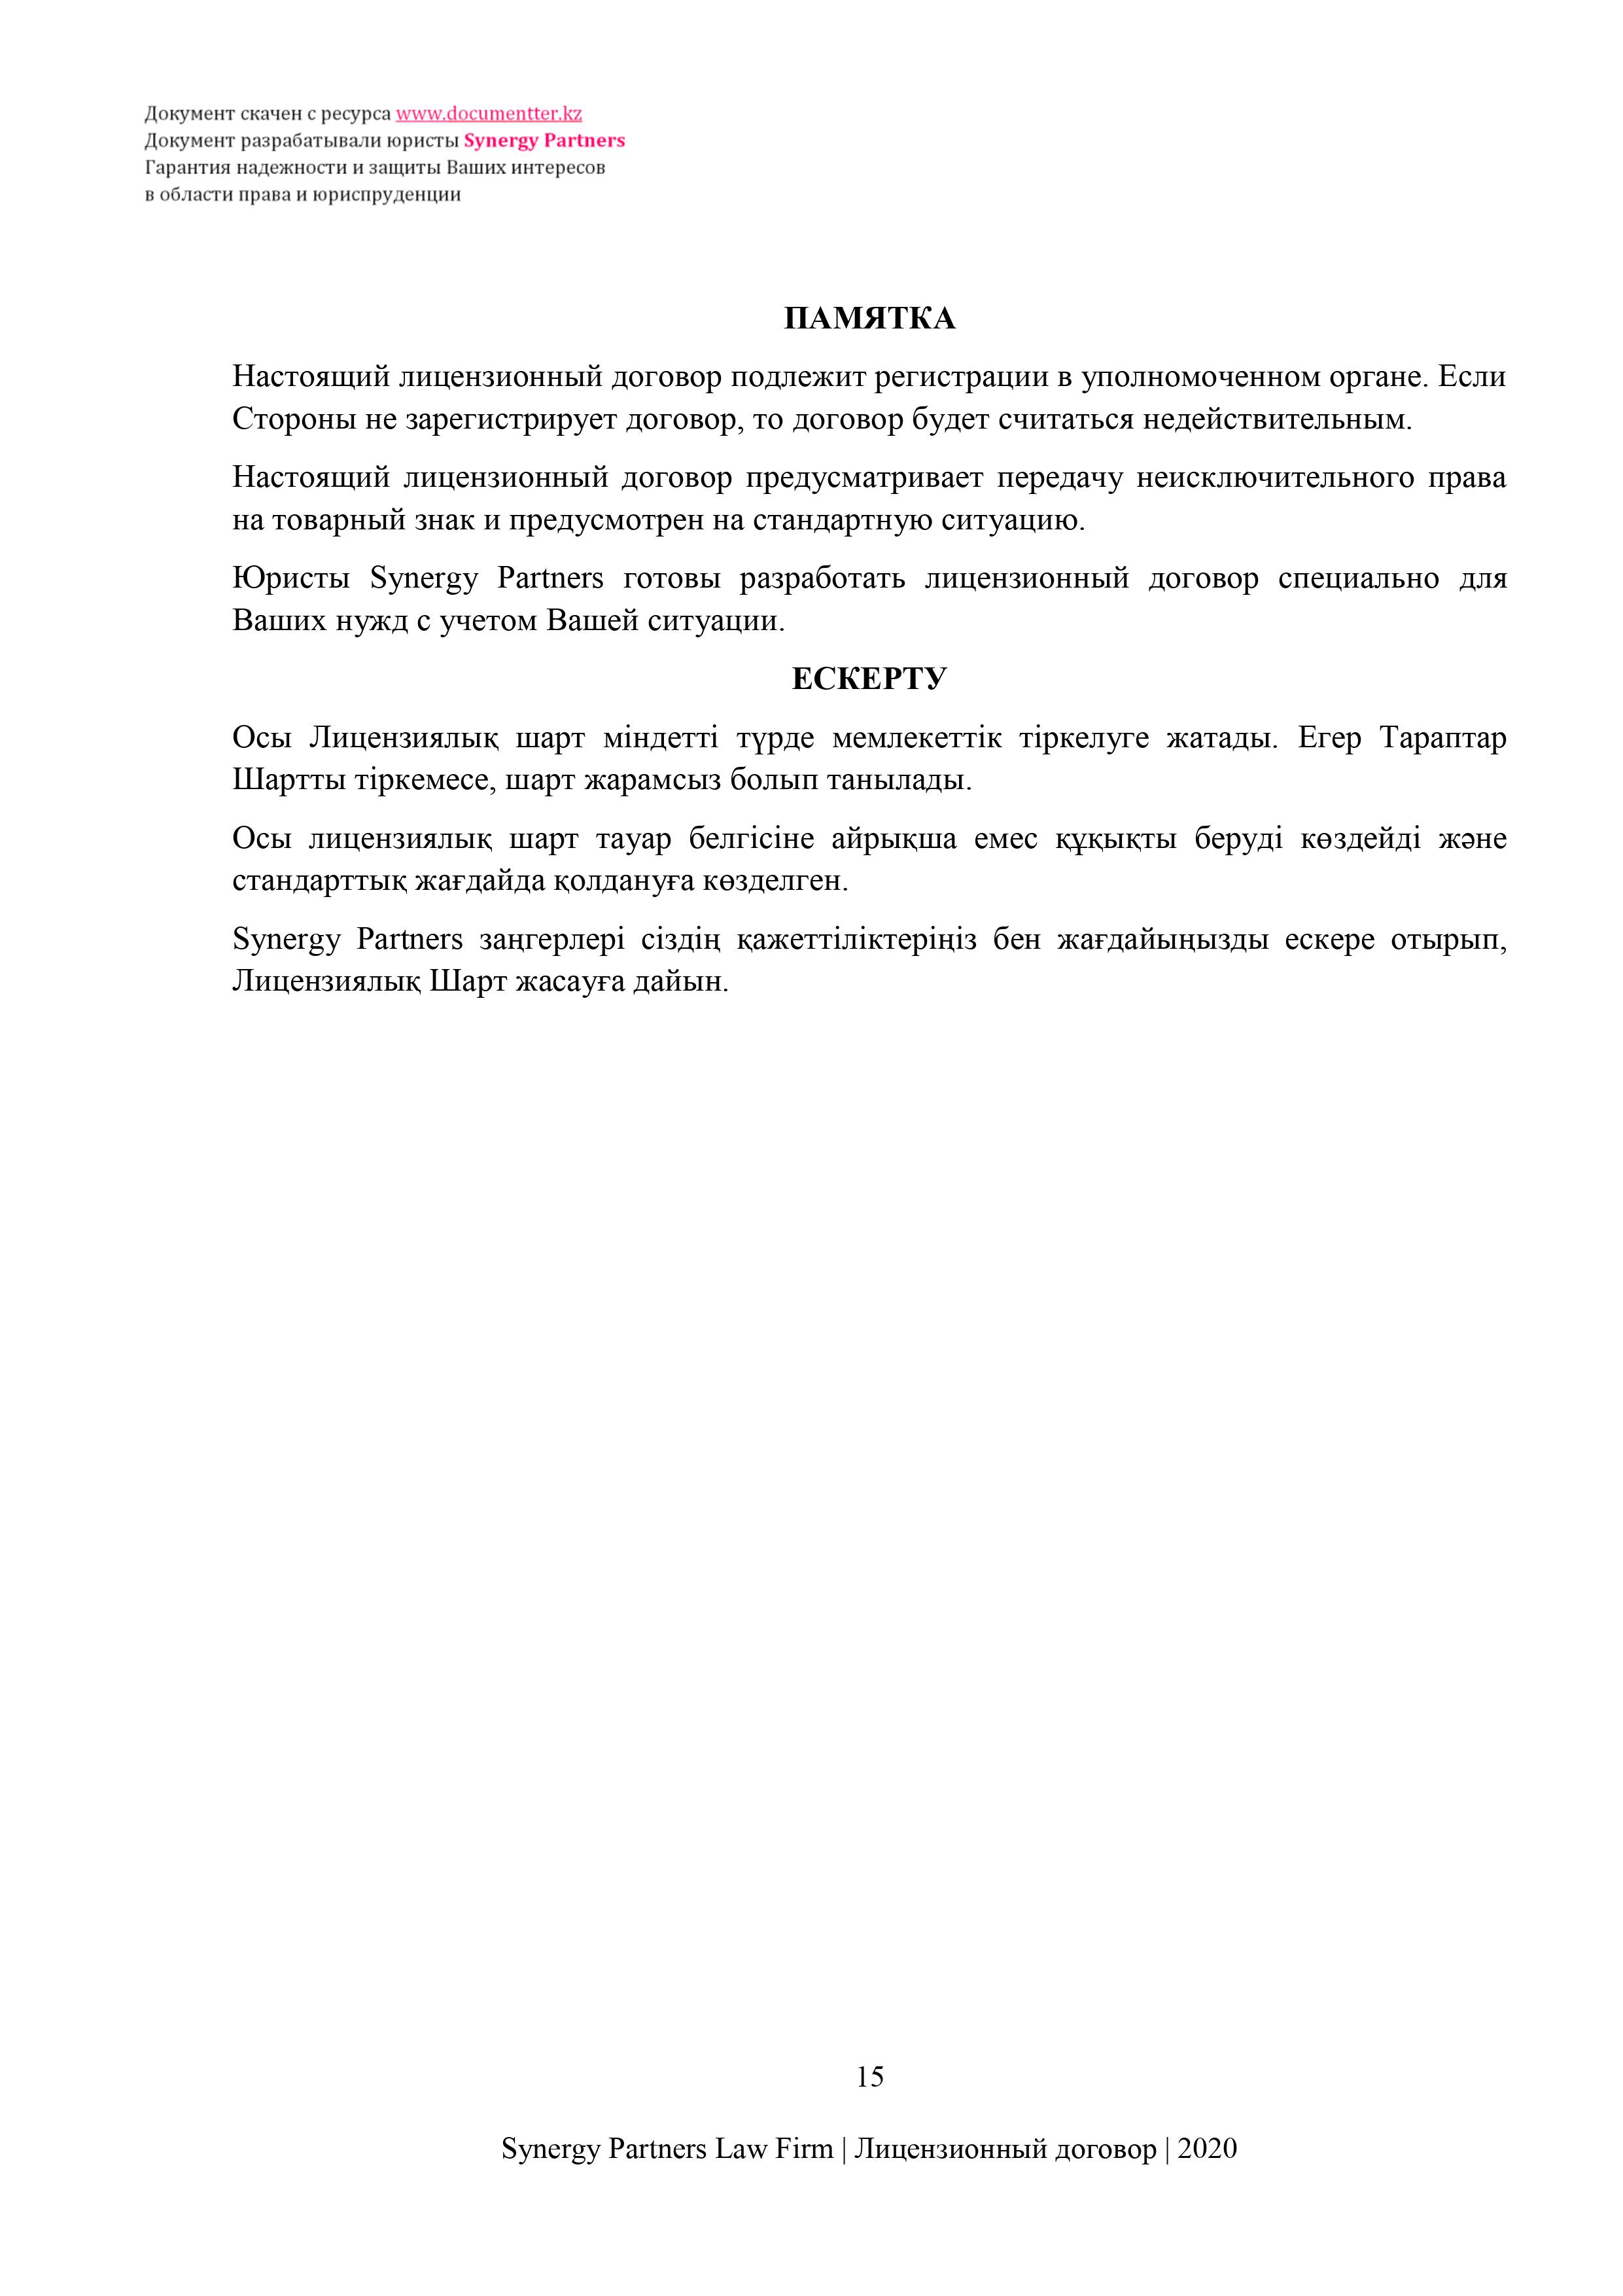 Лицензионный договор на неисключительное использование товарного знака (роялти) | Қазақстандағы documentterkz.com